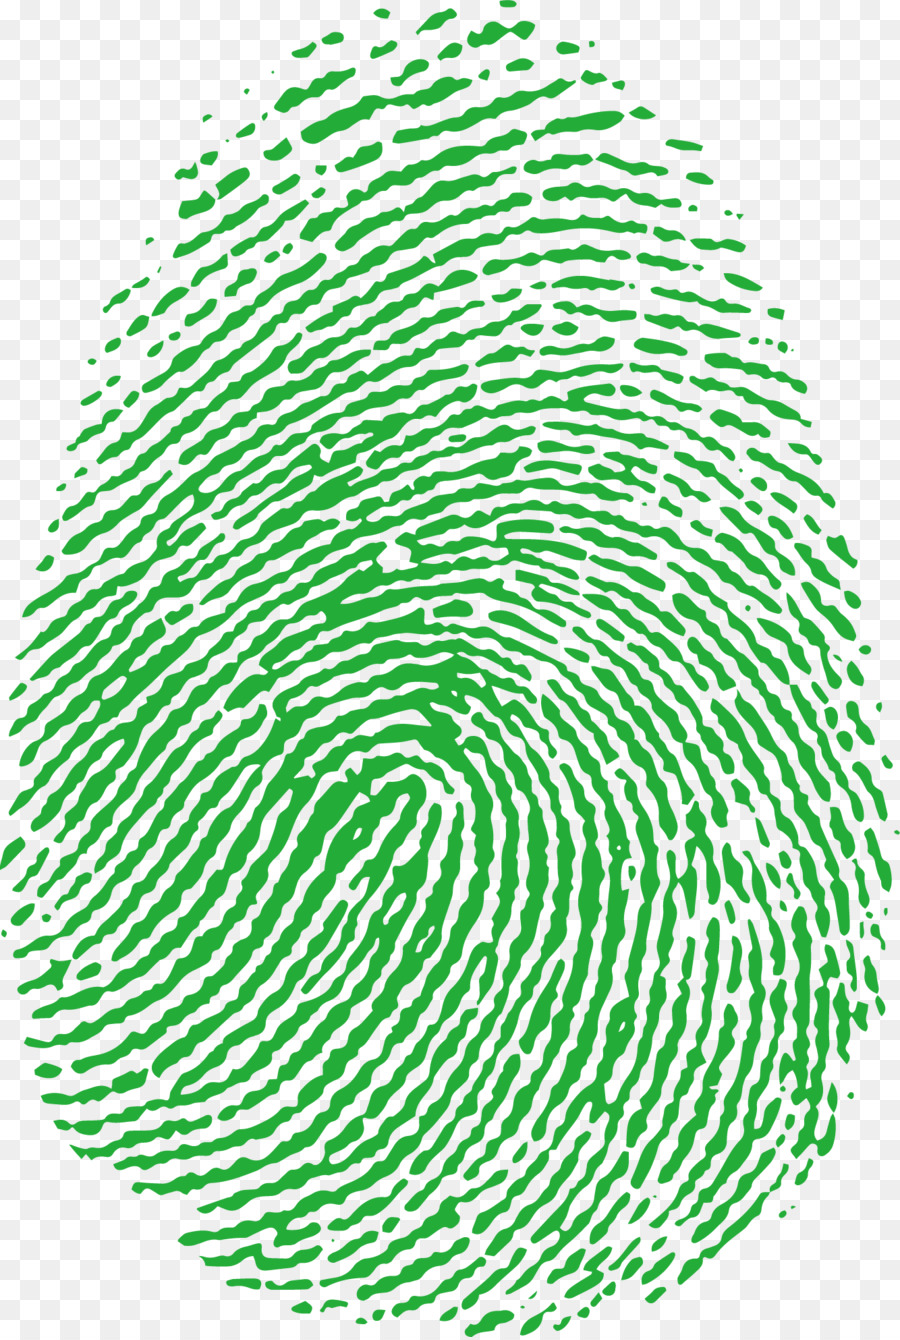 Fingerprint Image scanner - Fingerprint elements png download - 1334*1982 - Free Transparent Fingerprint png Download.